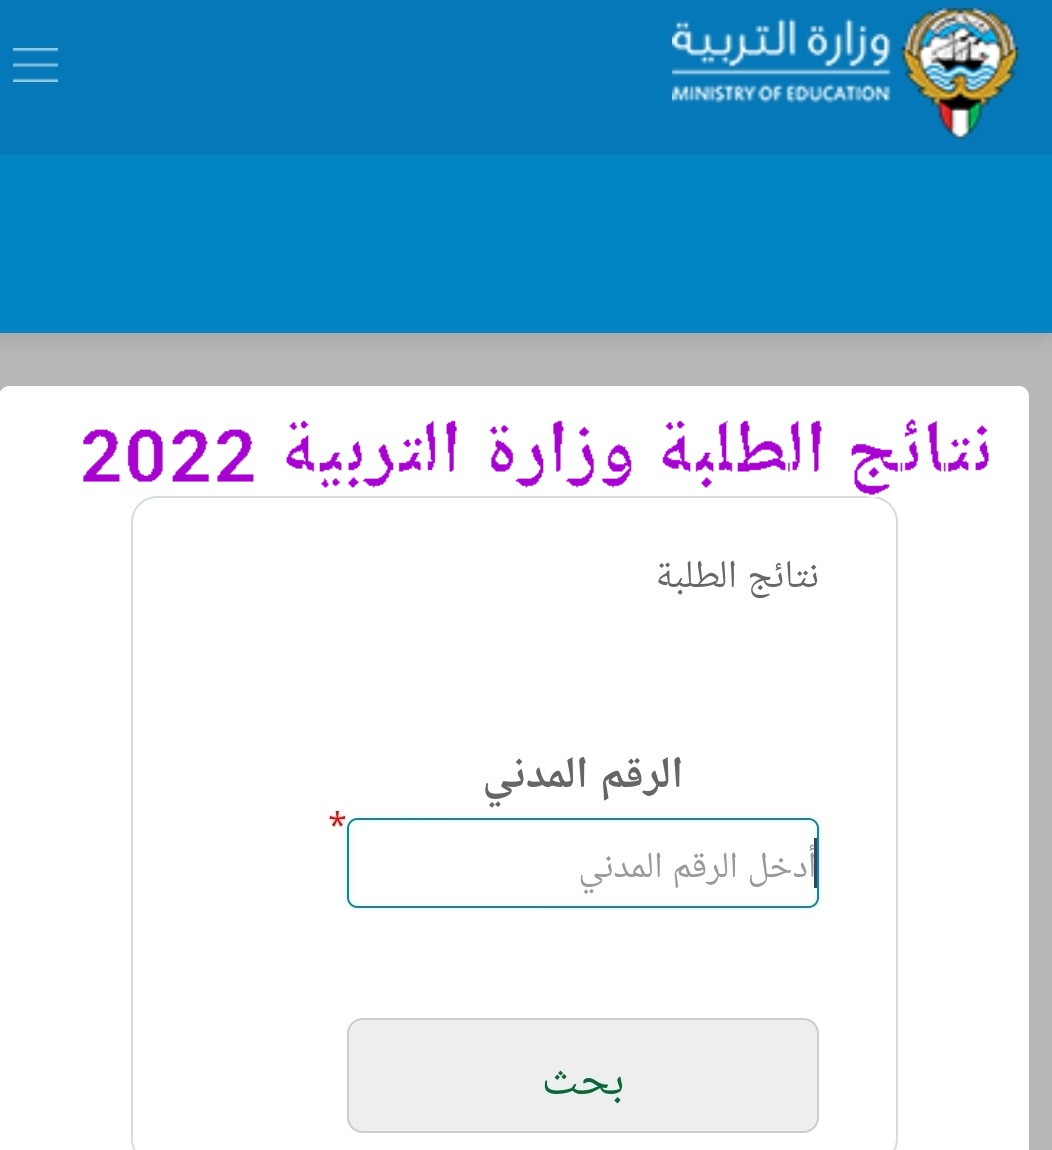 رابط نتائج الطلبة وزارة التربية وقائمة المدارس التي رفعت النتائج الكويت 2022